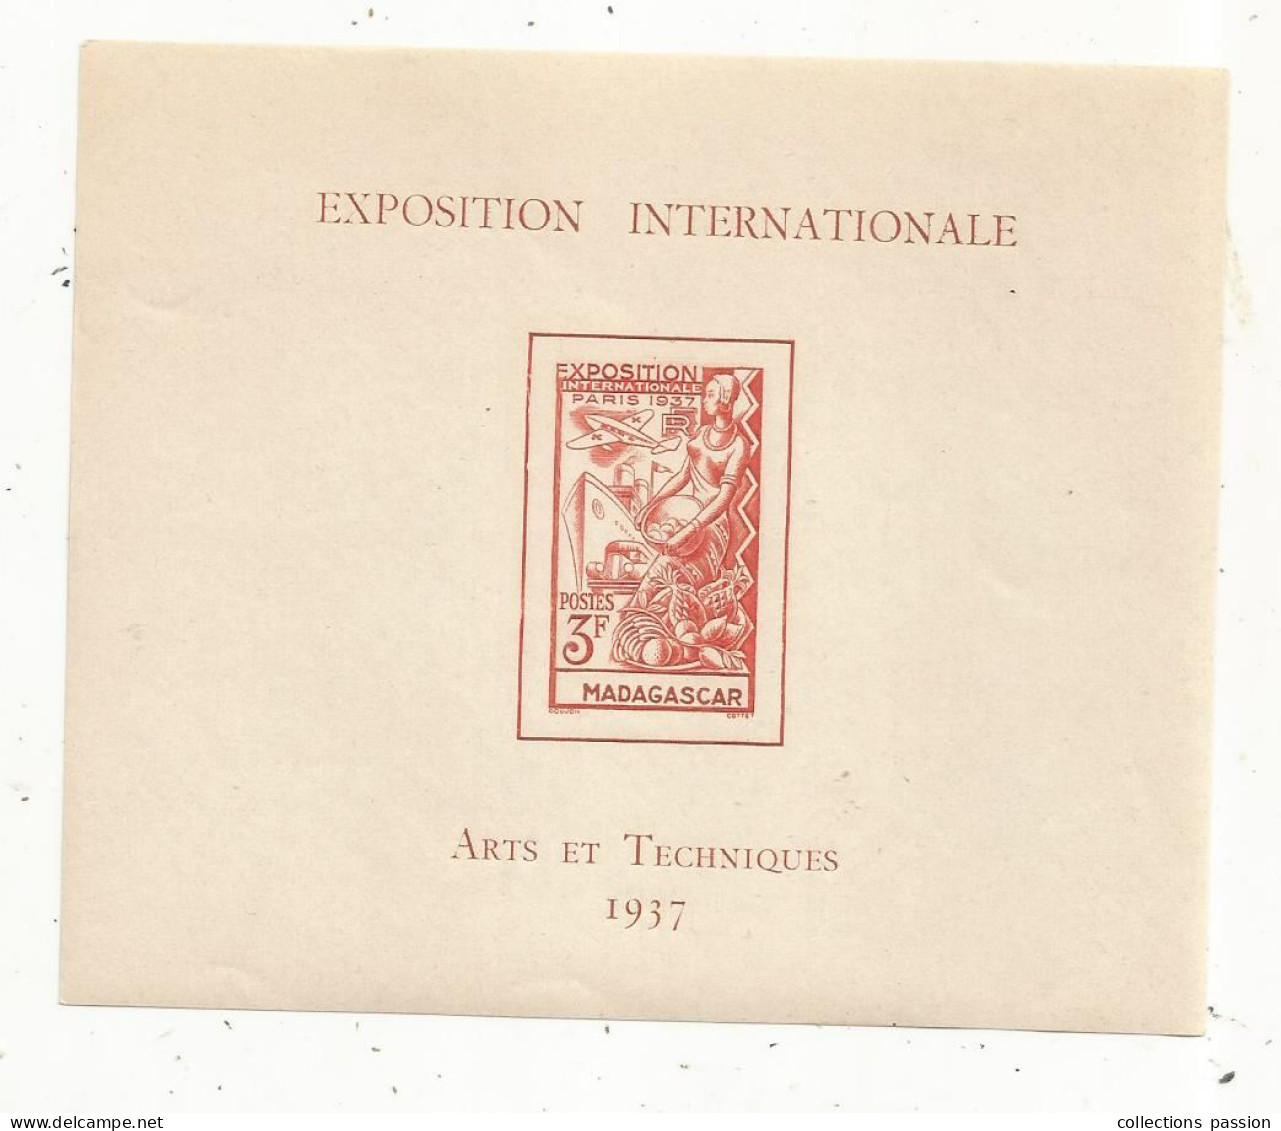 Exposition Internationale , ARTS ET TECHNIQUES 1937 , MADAGASCAR ,3 F - Lettres & Documents